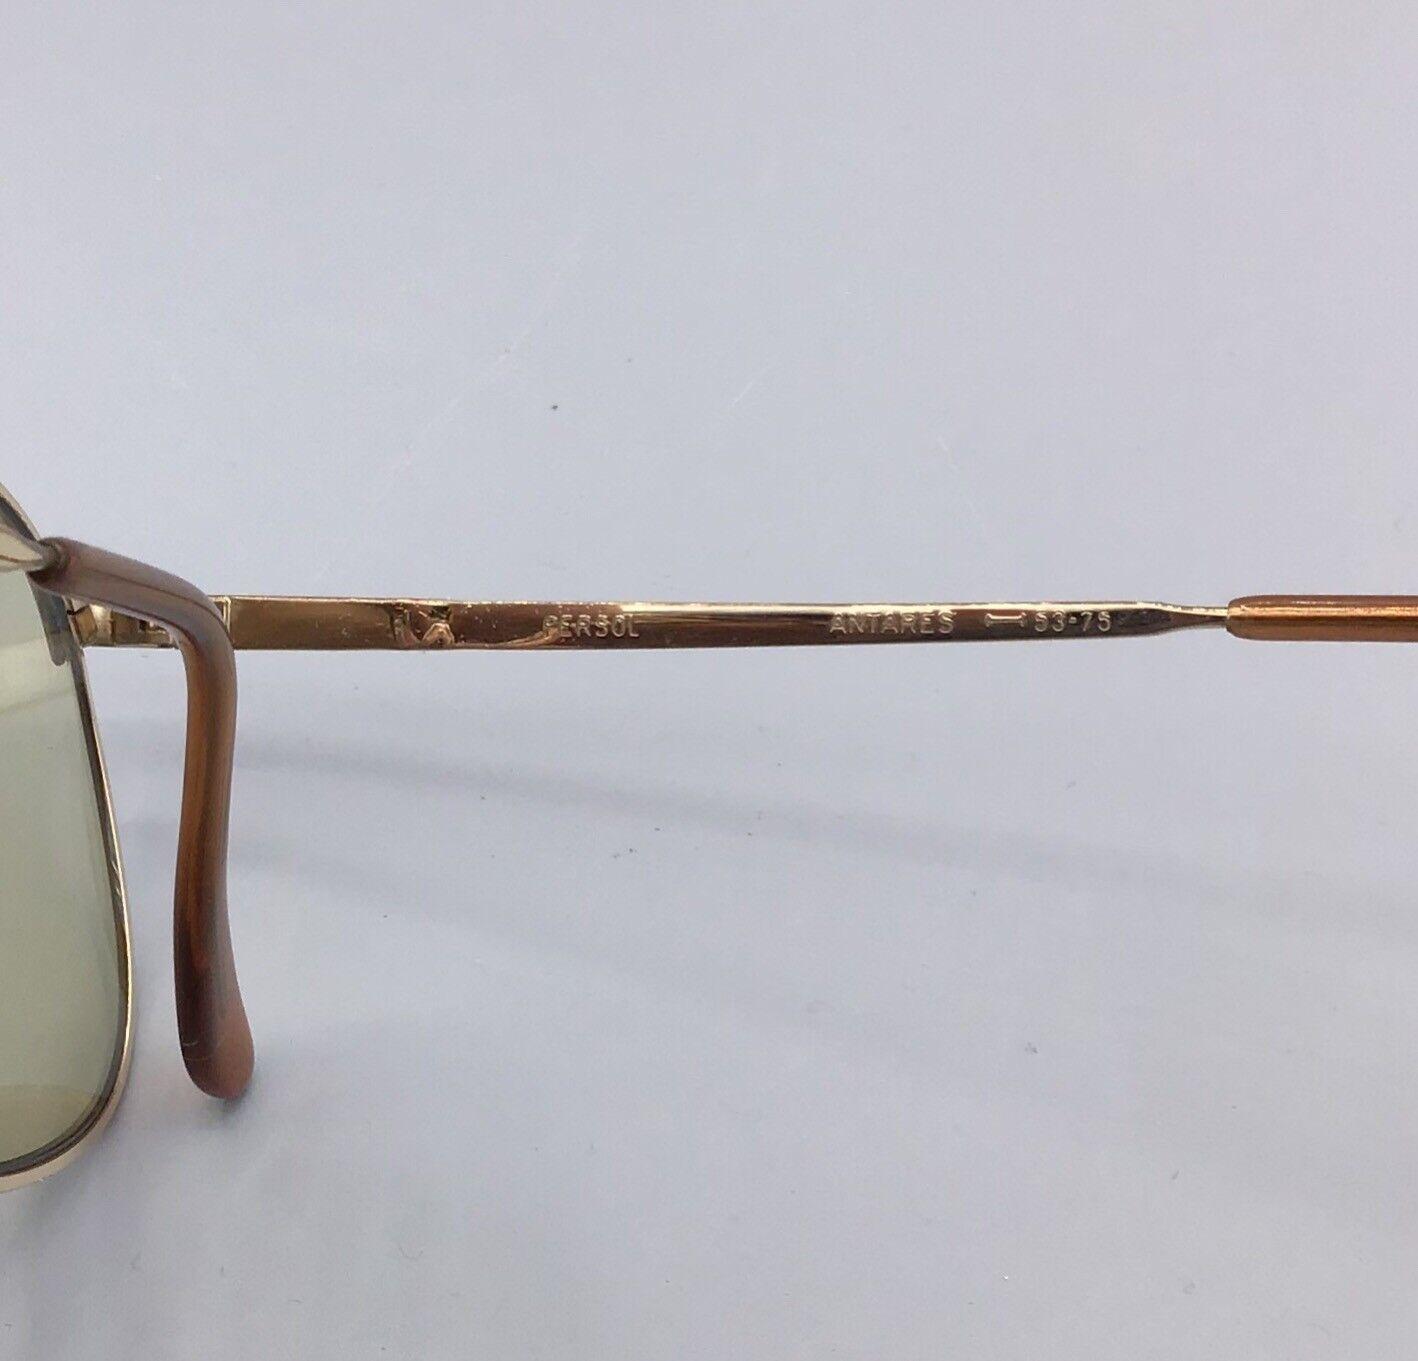 PERSOL RATTI ANTARES occhiali da sole VINTAGE SUNGLASSES original